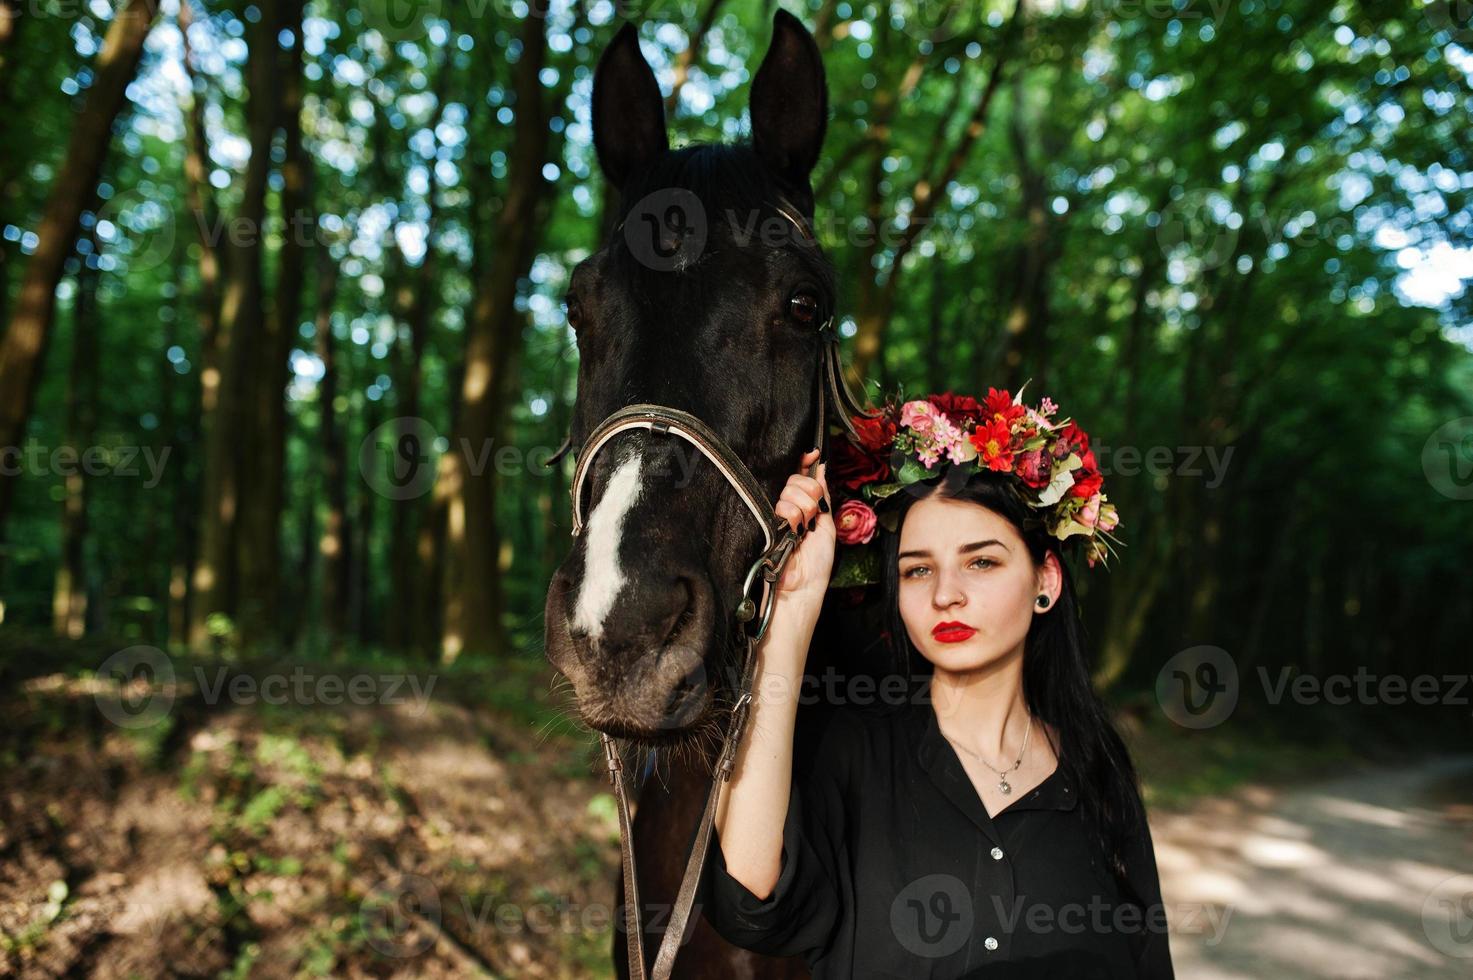 mystisk flicka i krans slitage i svart med häst i trä. foto